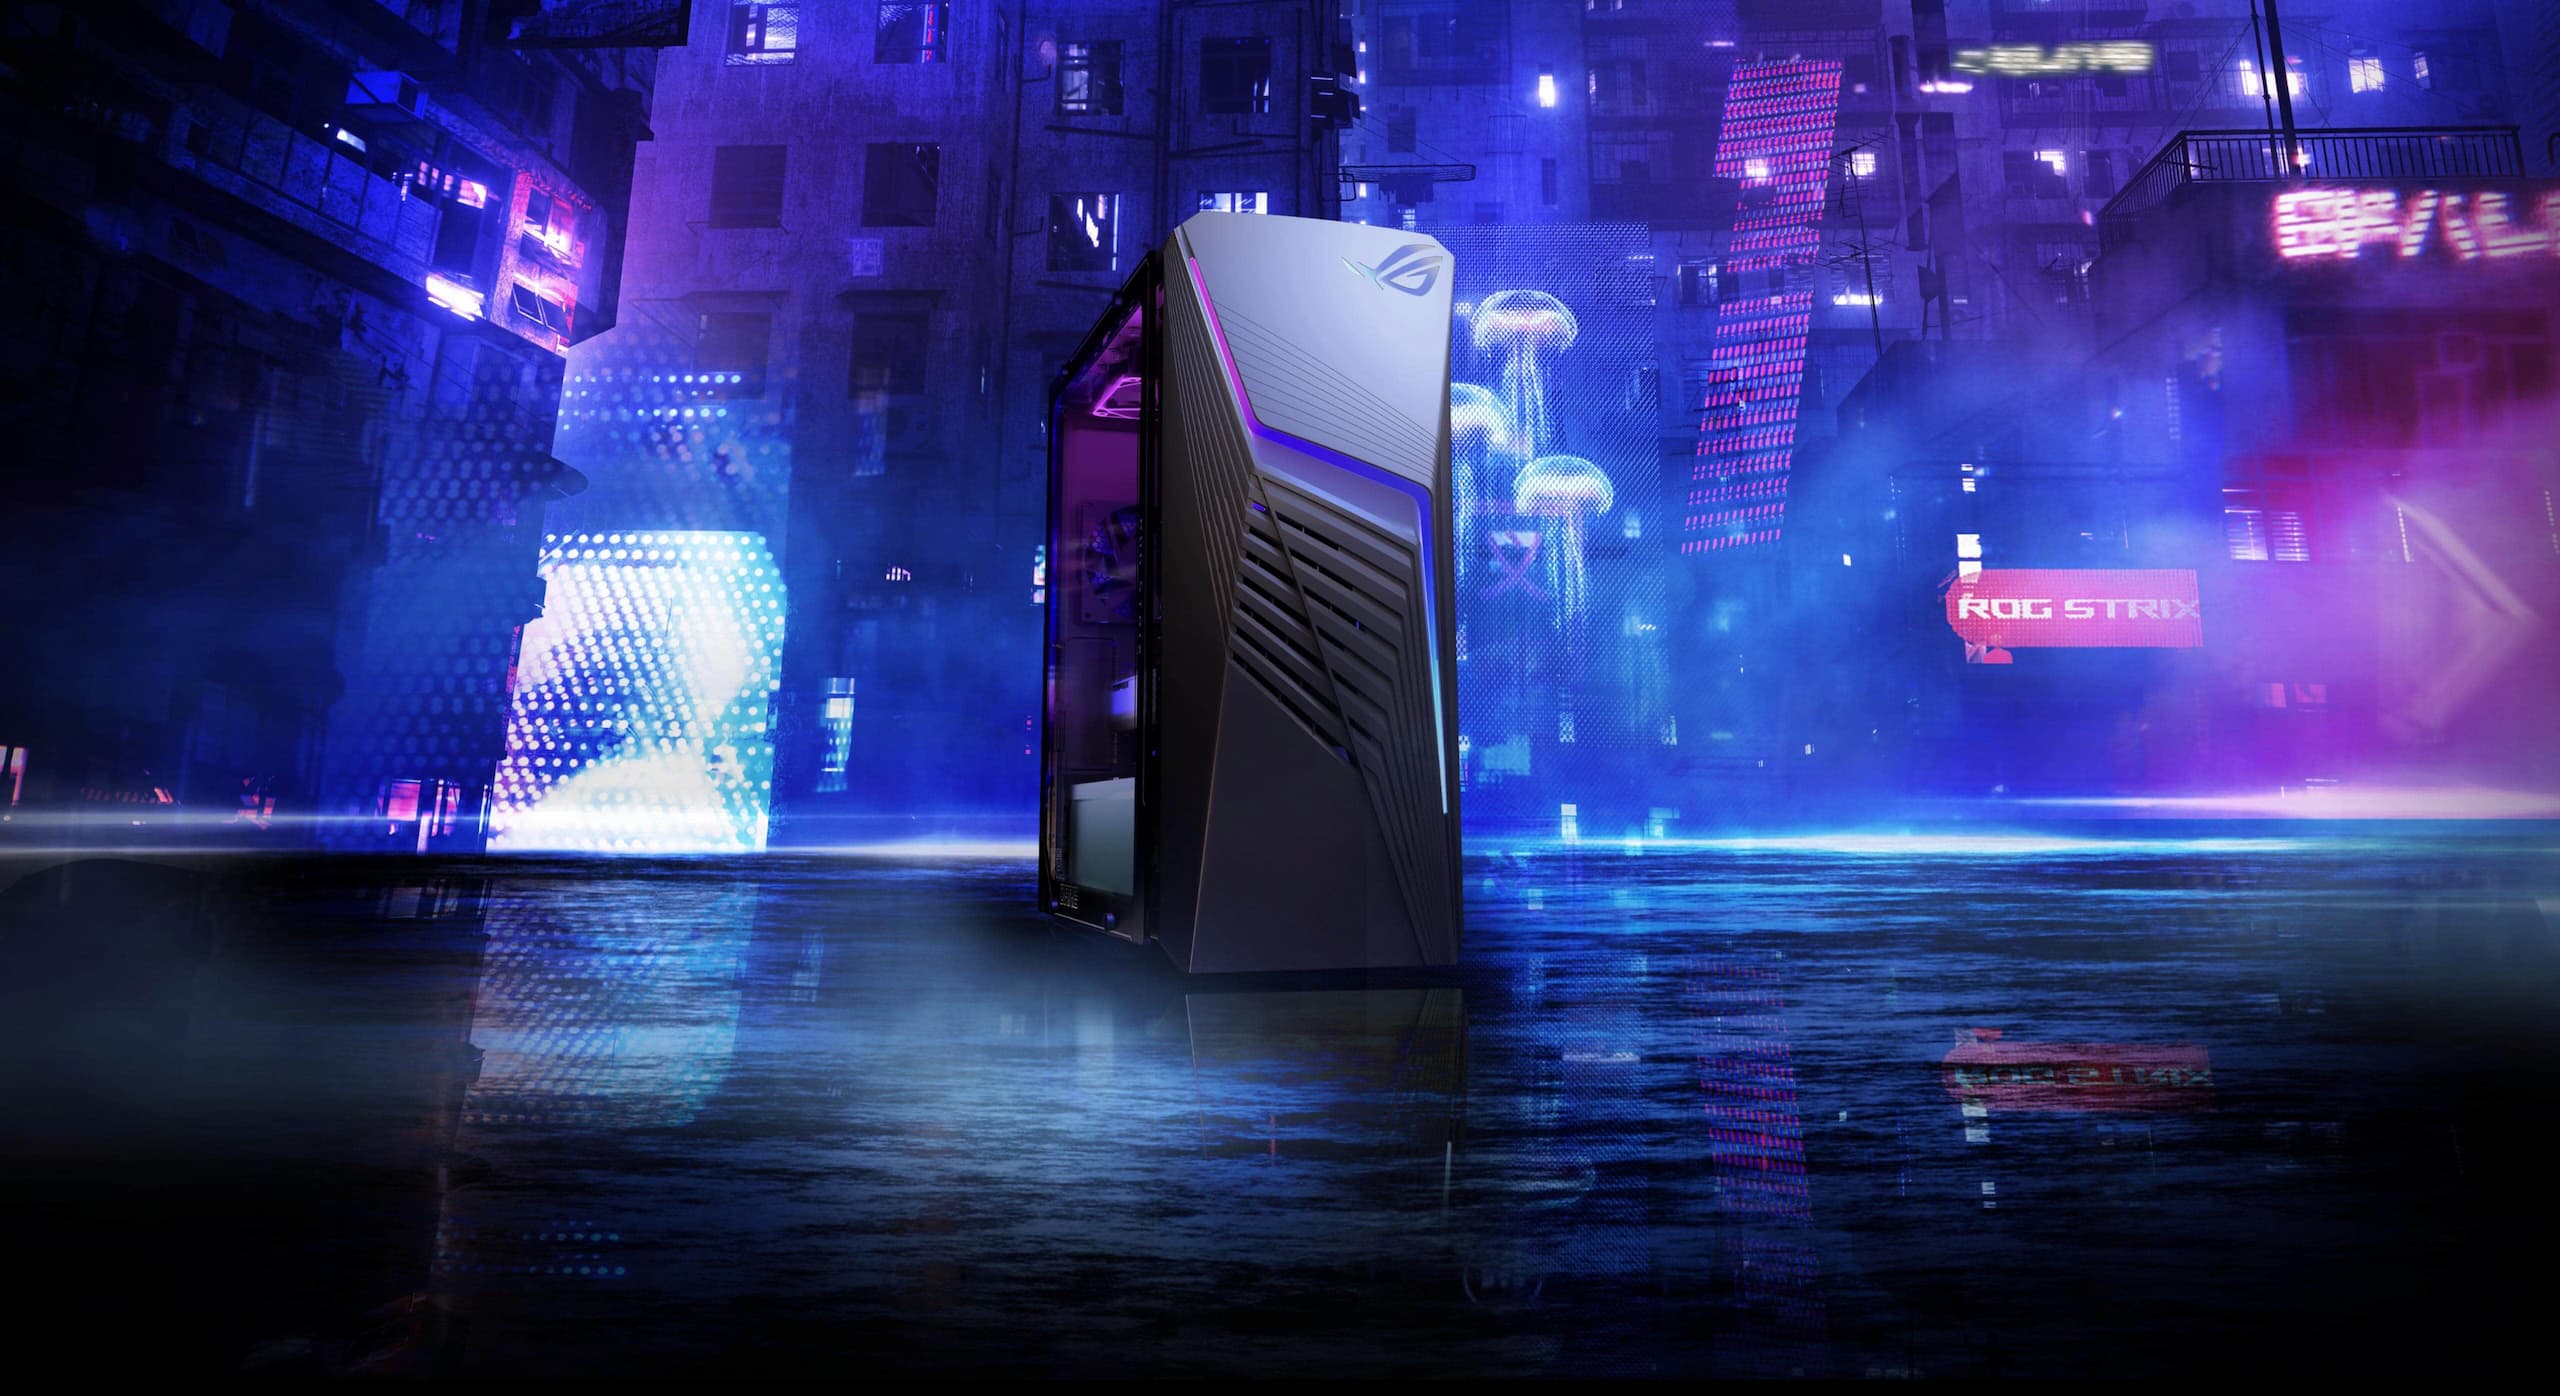 Le Strix G13CH dans une rue, avec un paysage urbain cyberpunk éclairé par des néons derrière la machine.